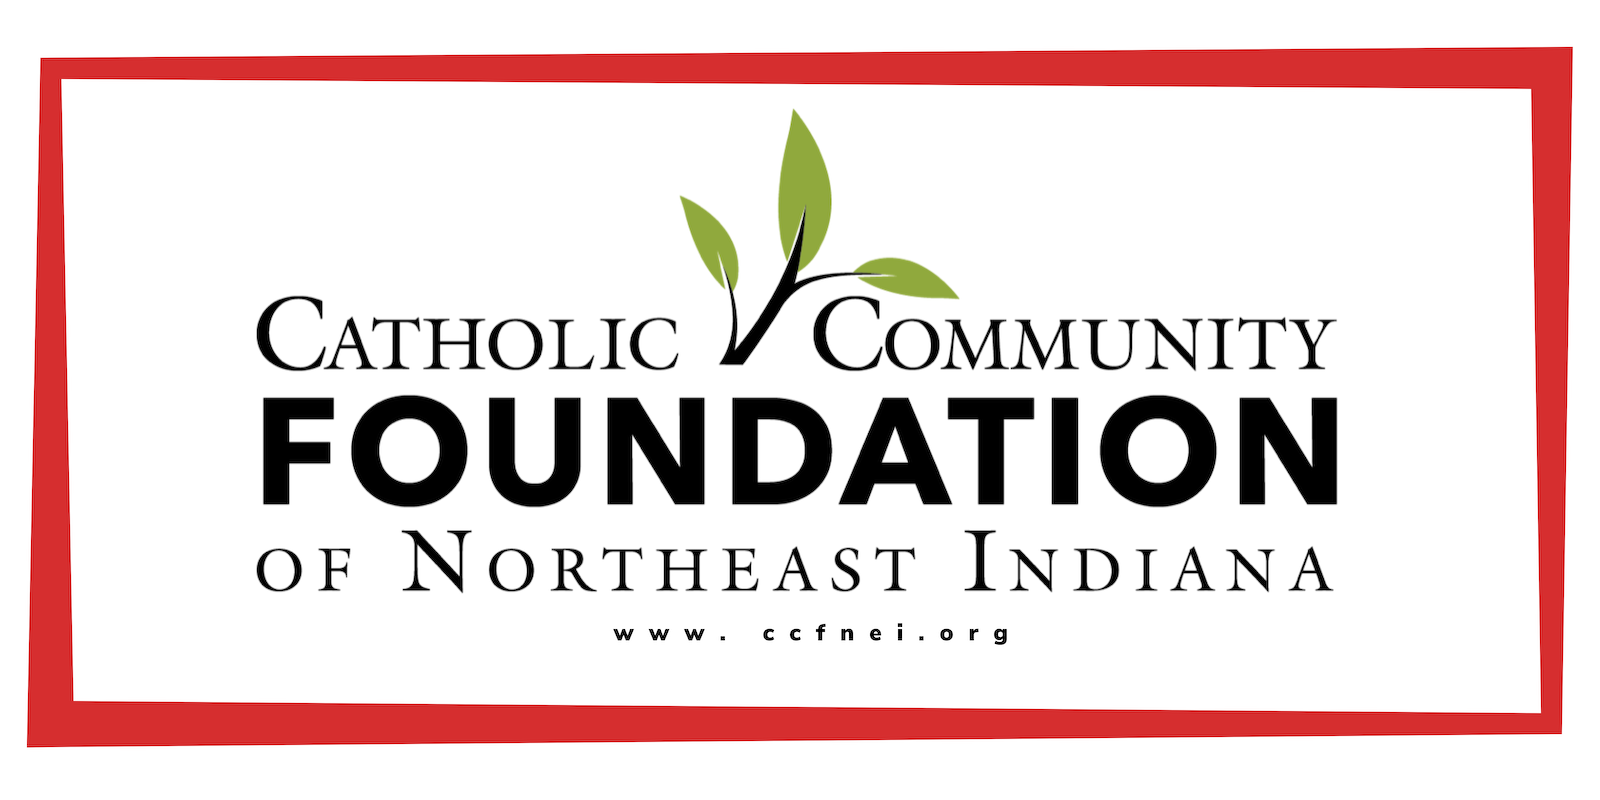 CATHOLIC COMMUNITY FOUNDATION OF NORTHEAST INDIANA